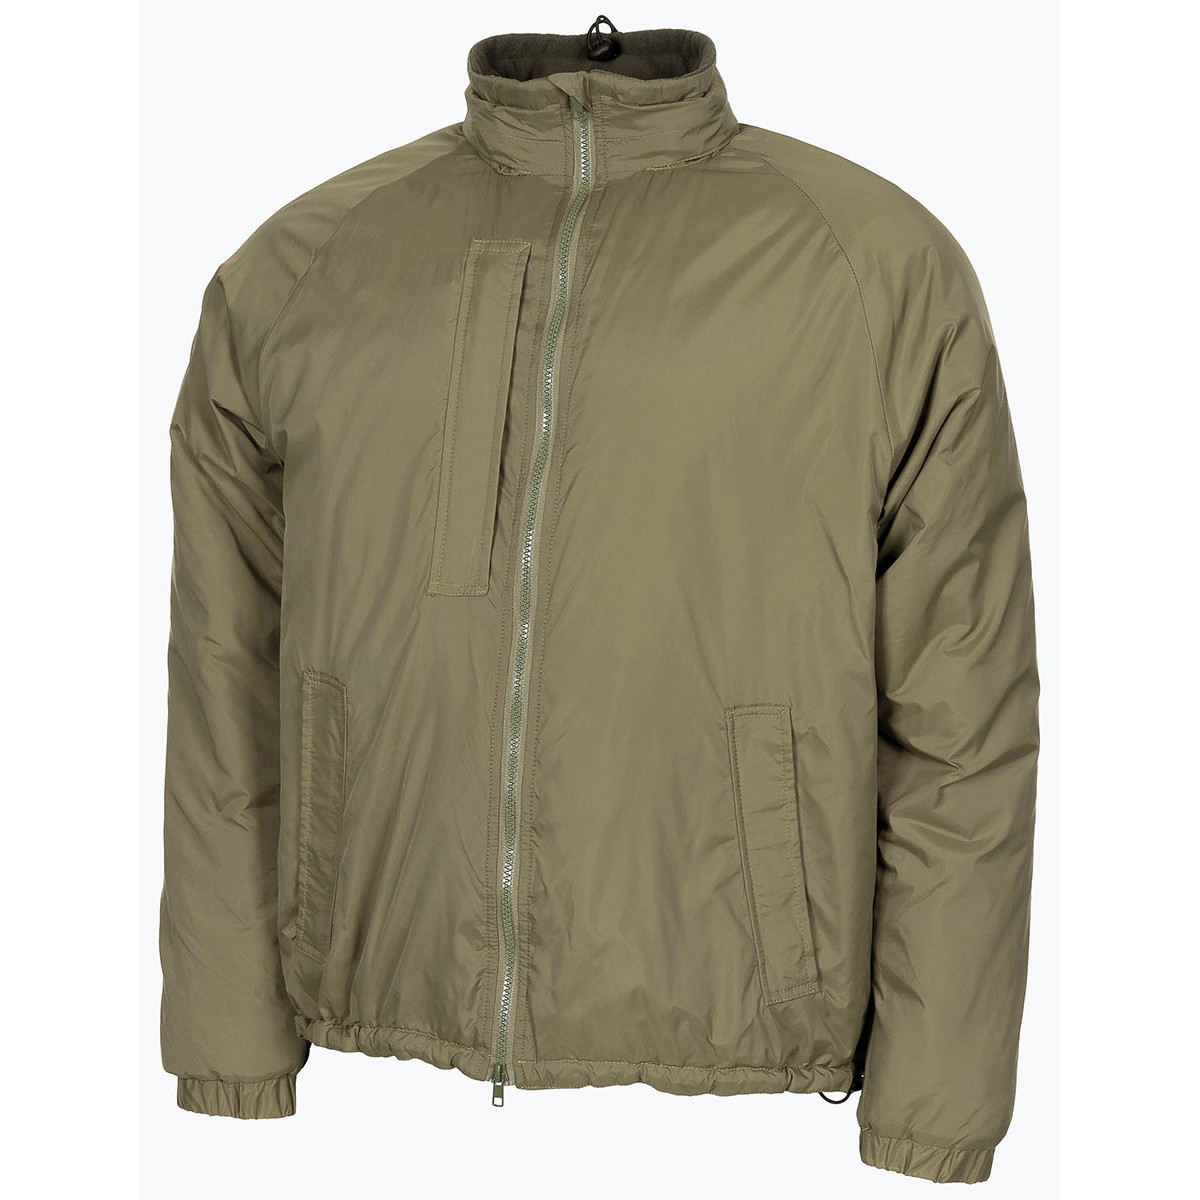 Bunda zateplovací zelená GB Softie Thermal Jacket OD Green MFH® Adventure Velikost: S